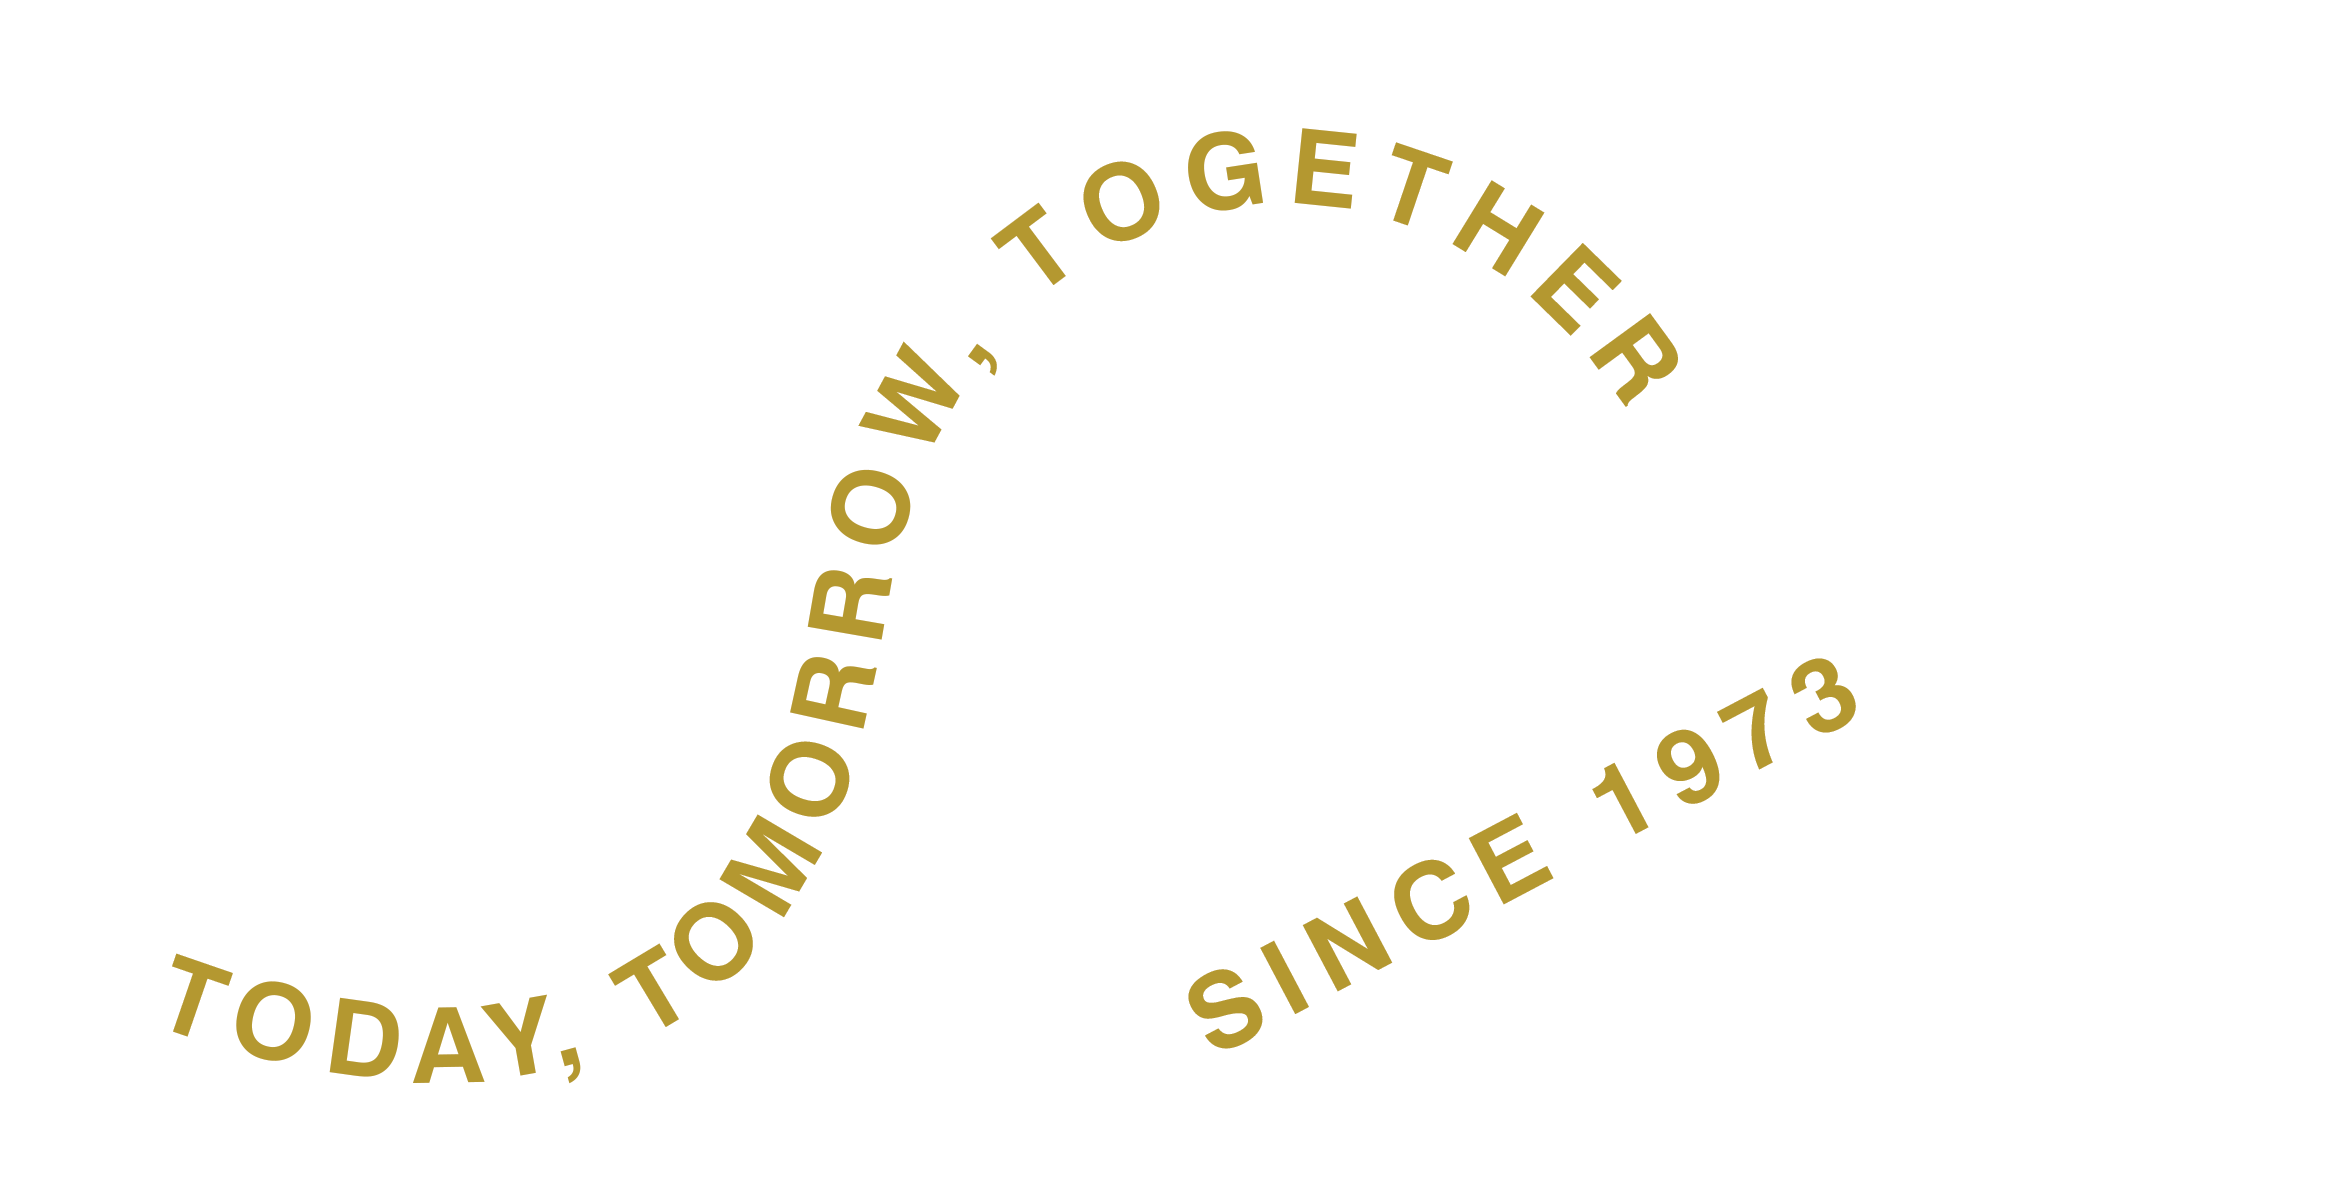 Chapman Freeborn 50 years anniversary logo